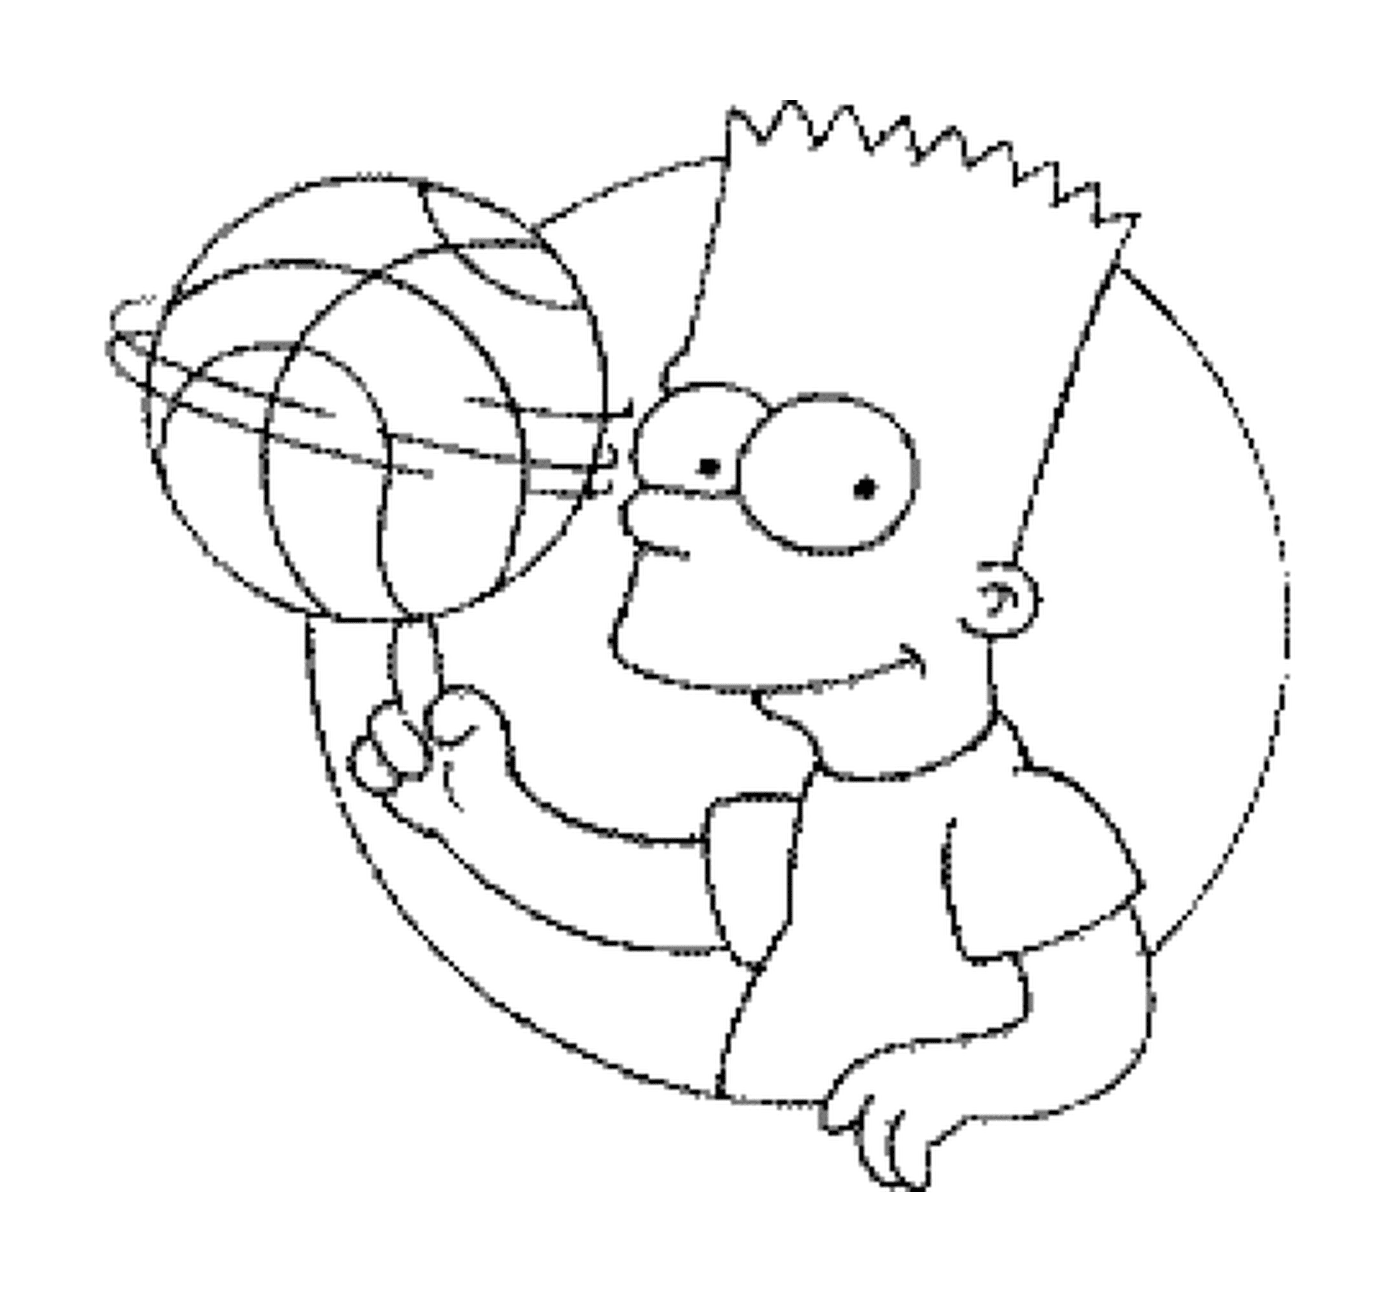  巴特打篮球 